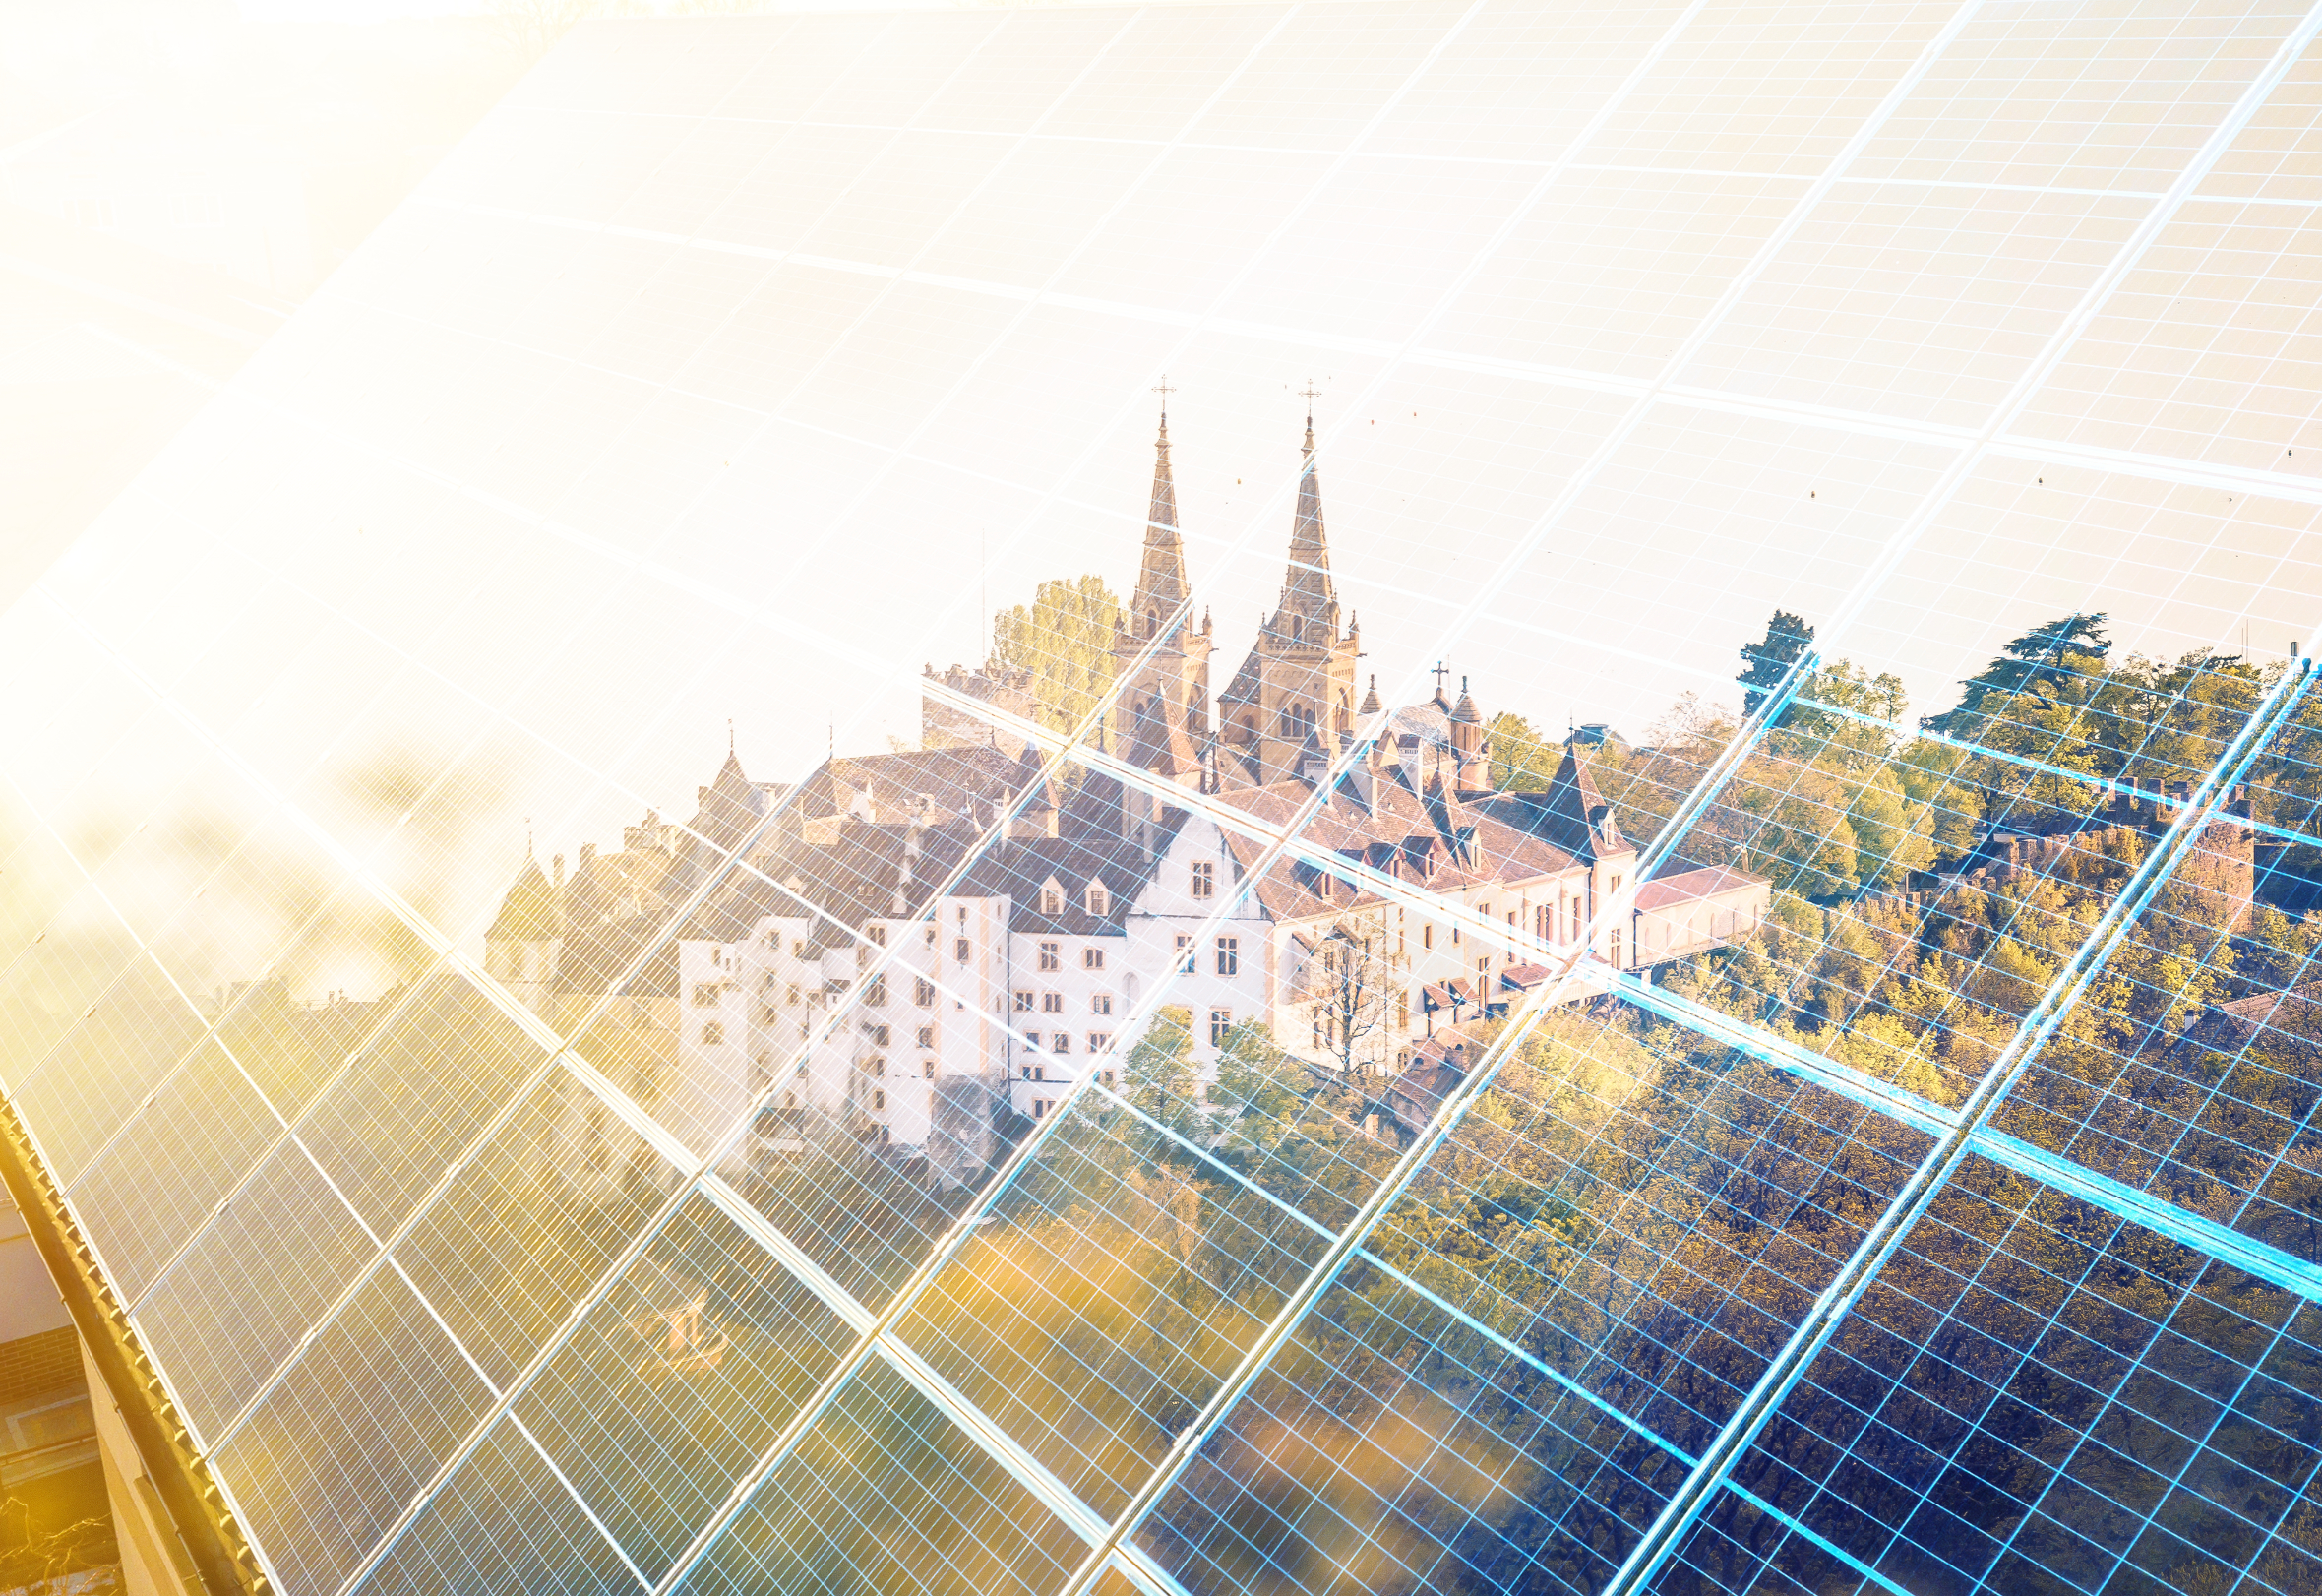 Les divers projets et collaborations en cours à Neuchâtel illustrent son engagement à exploiter l'énergie solaire pour un avenir durable.